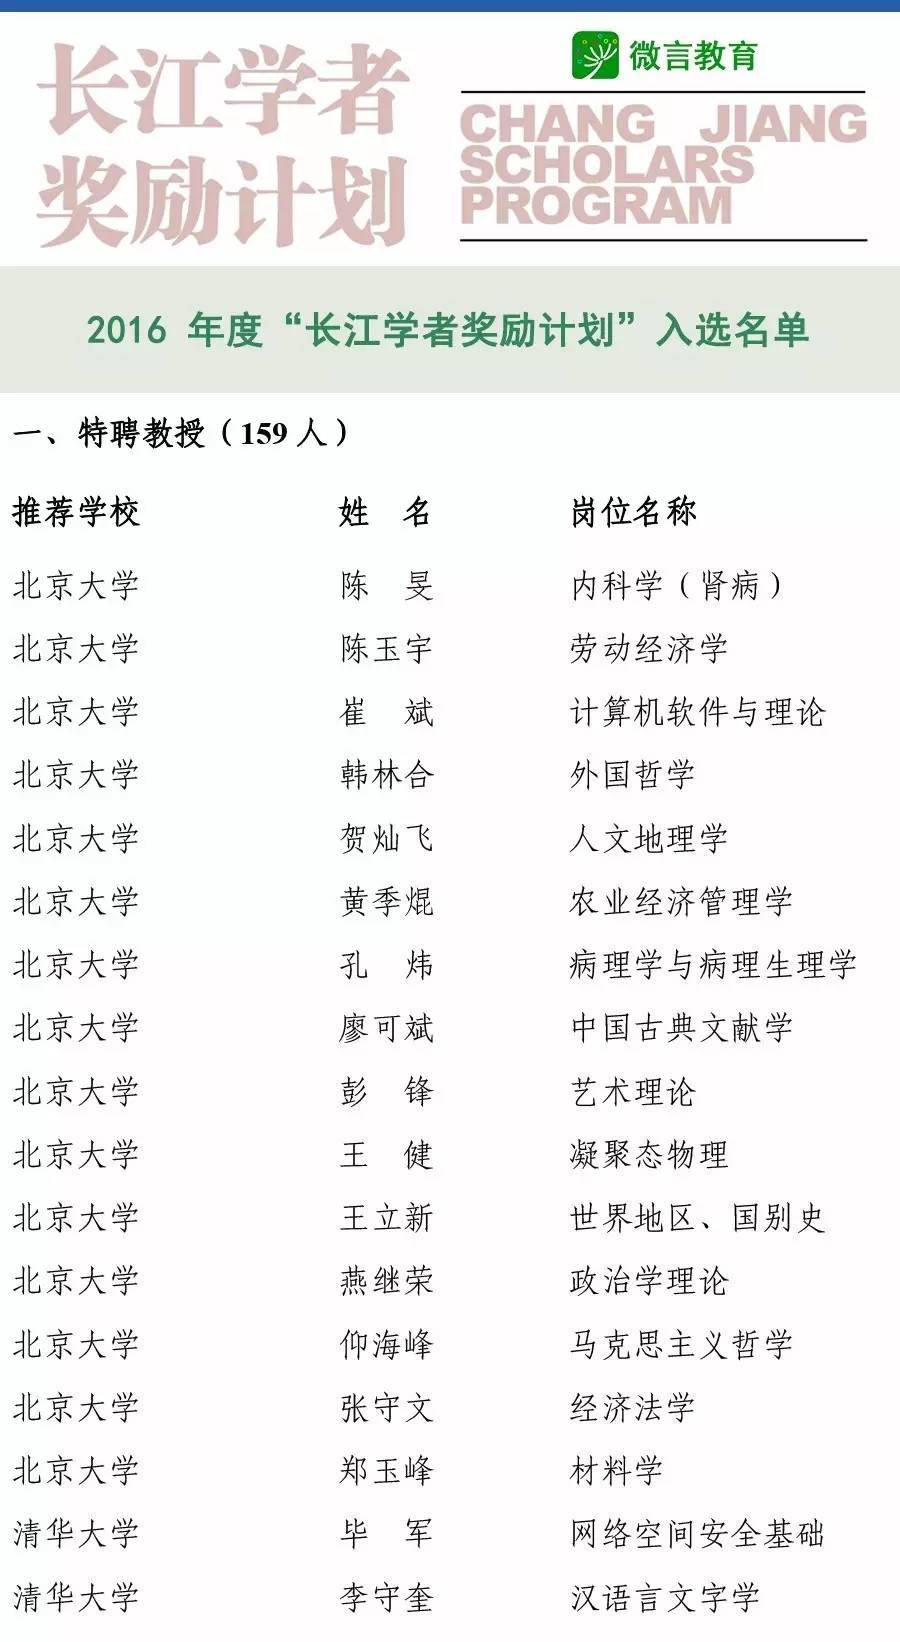 2016长江<font color="red">学者</font>名单公布